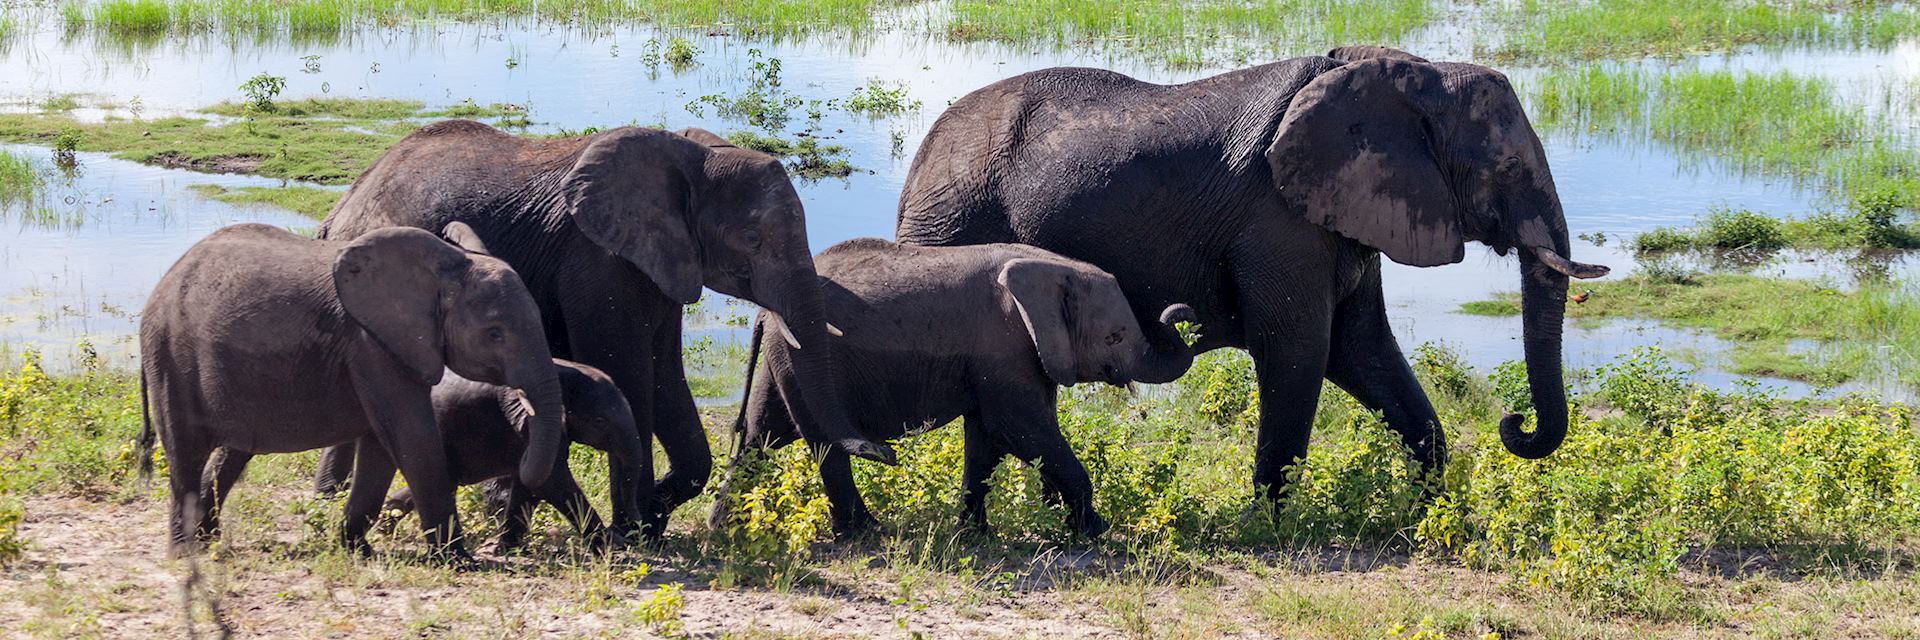 Elephant herd in Chobe National Park, Botswana